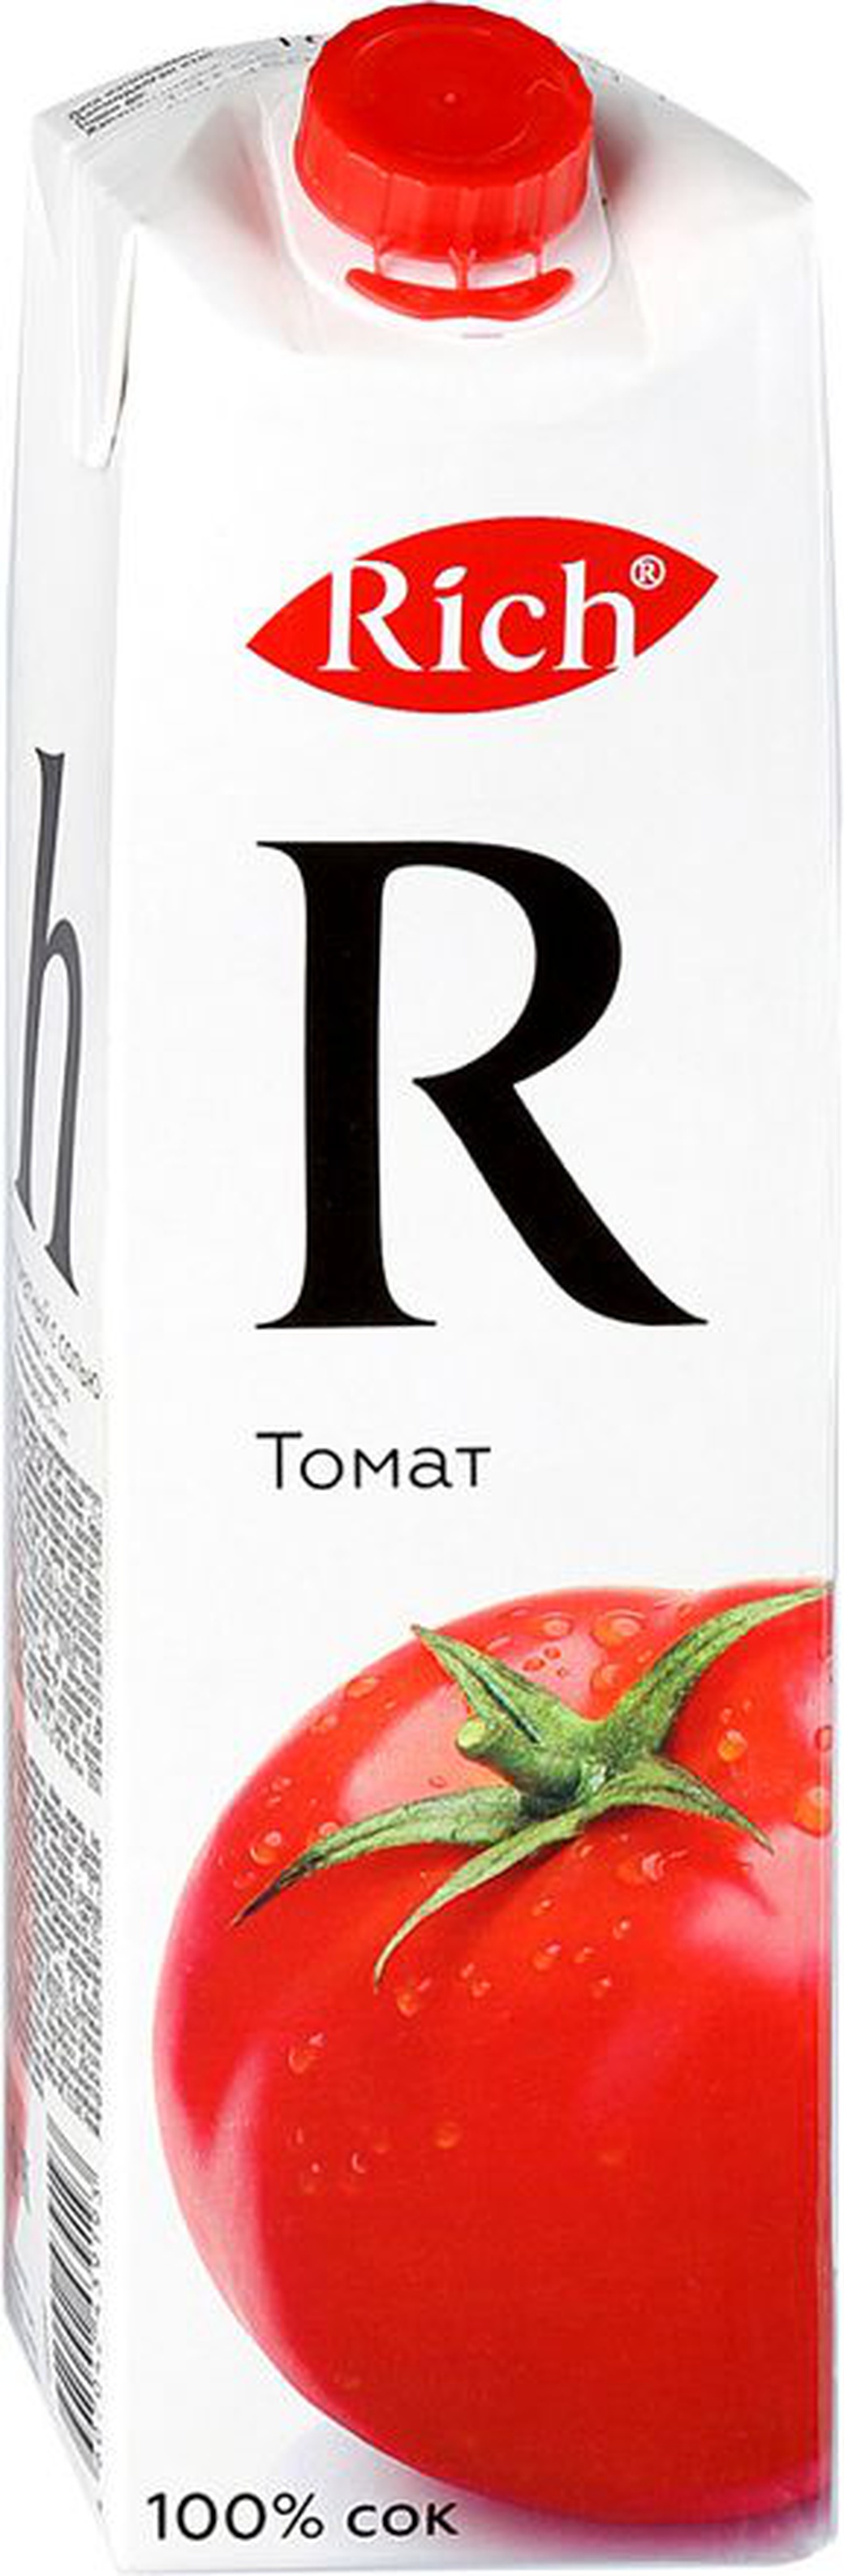 Сок Rich томатный с солью 1л фото